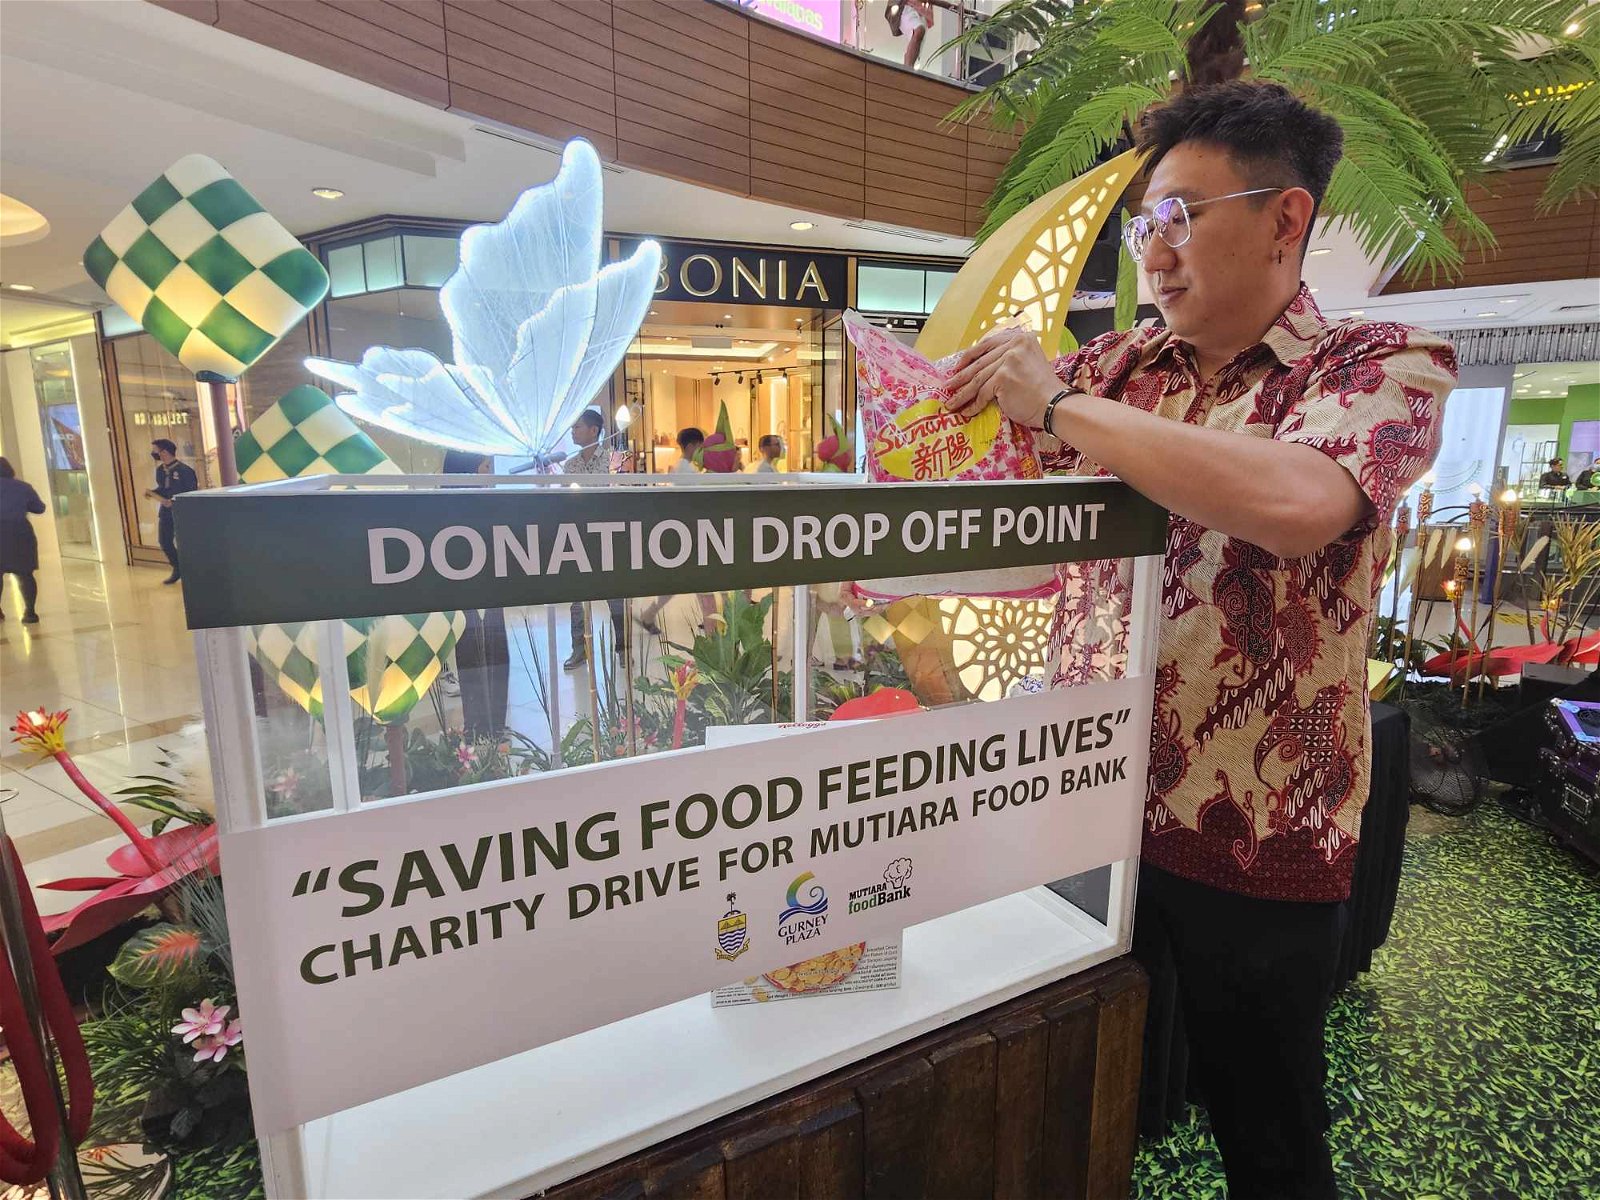 合您广场将在中央大厅放置箱子，民众可将捐献食品放入箱子，并通过珍珠食物银行分配给有需要群体。